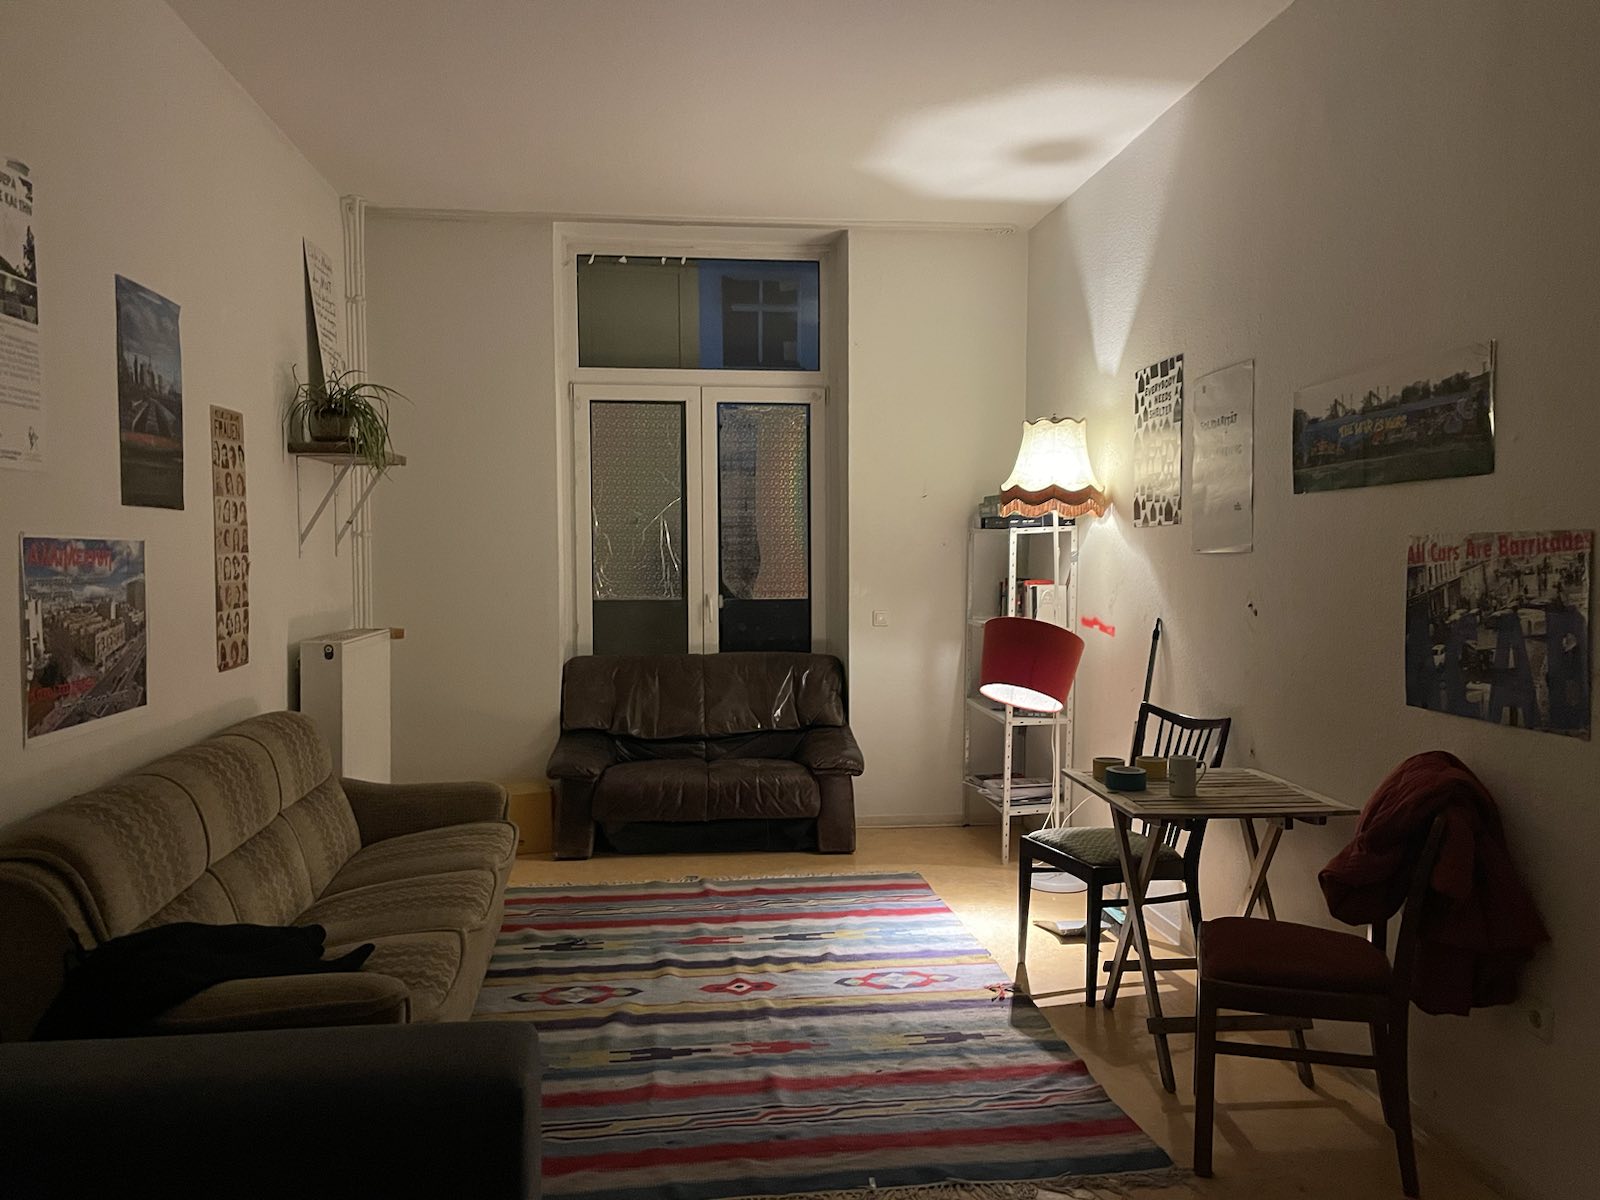 Blick in ein WG-Zimmer, da mit Teppich, Couch und Lampen gemütlich eingerichtet ist.